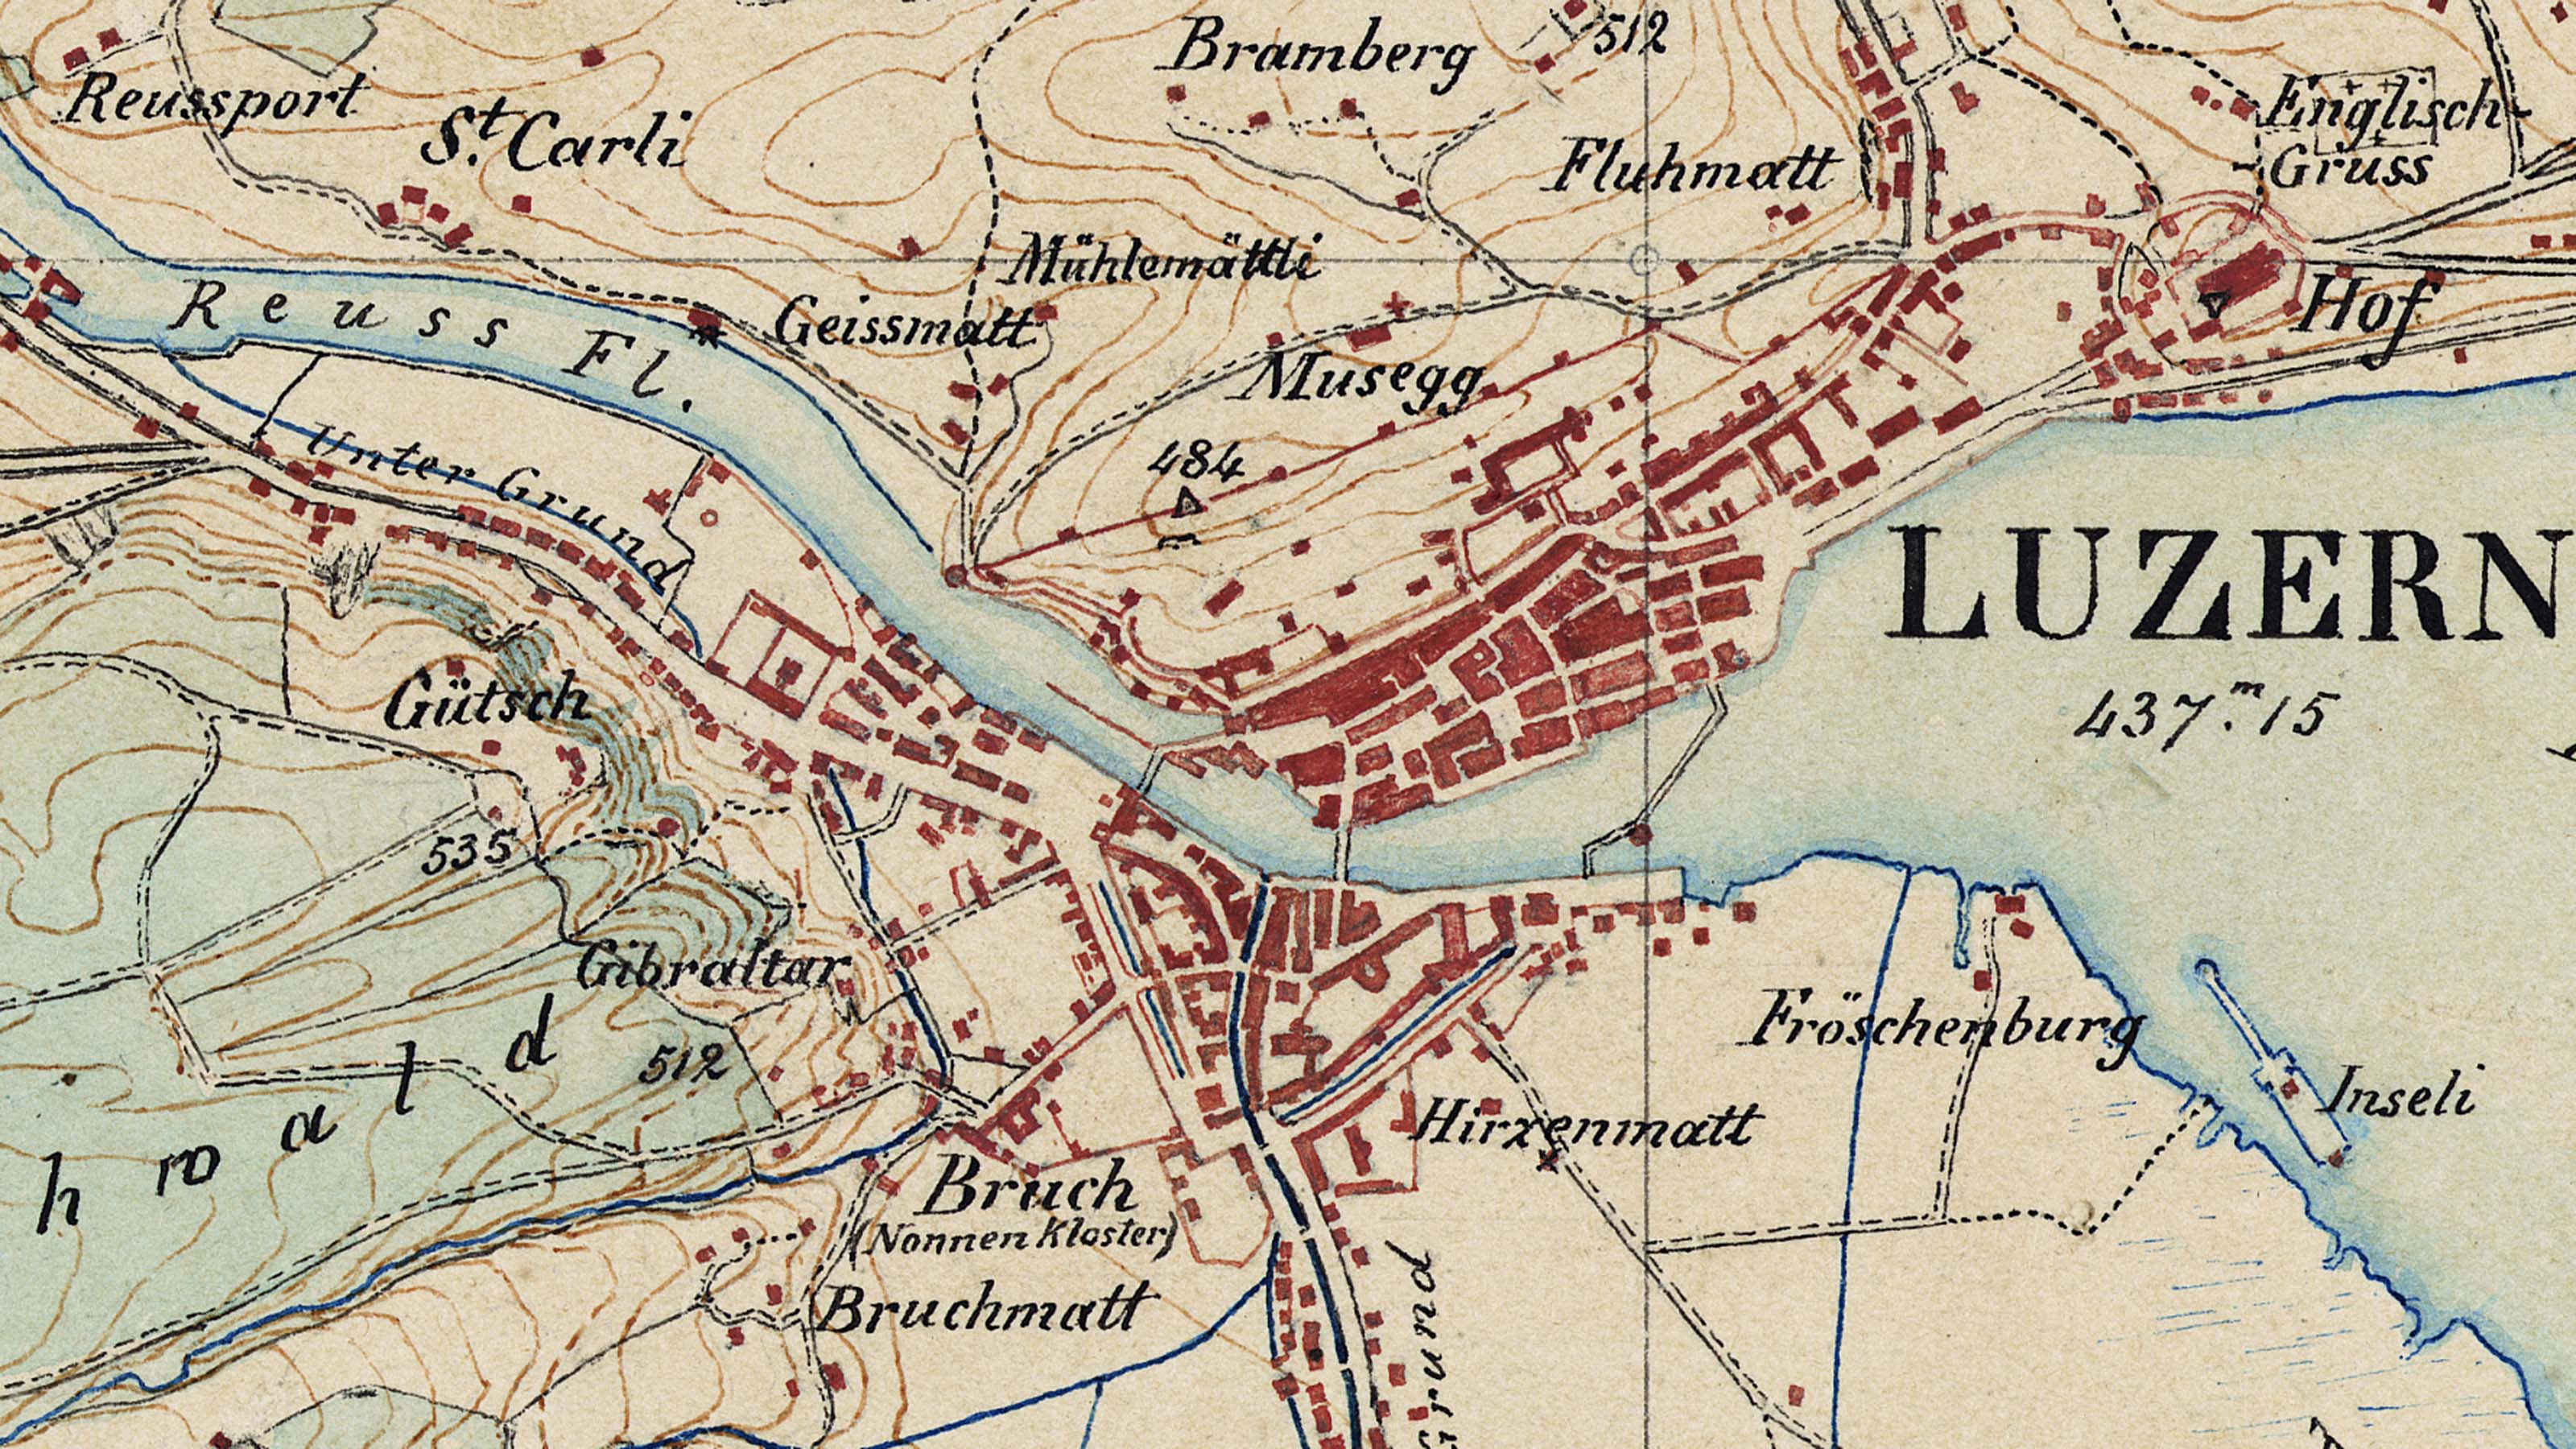 Extrait d'un levé original au 1:25 000 de 1856, Lucerne. La carte dessinée à la main est en plusieurs couleurs et montre la vieille ville de Lucerne, la rivière Reuss et le lac des Quatre-Cantons.